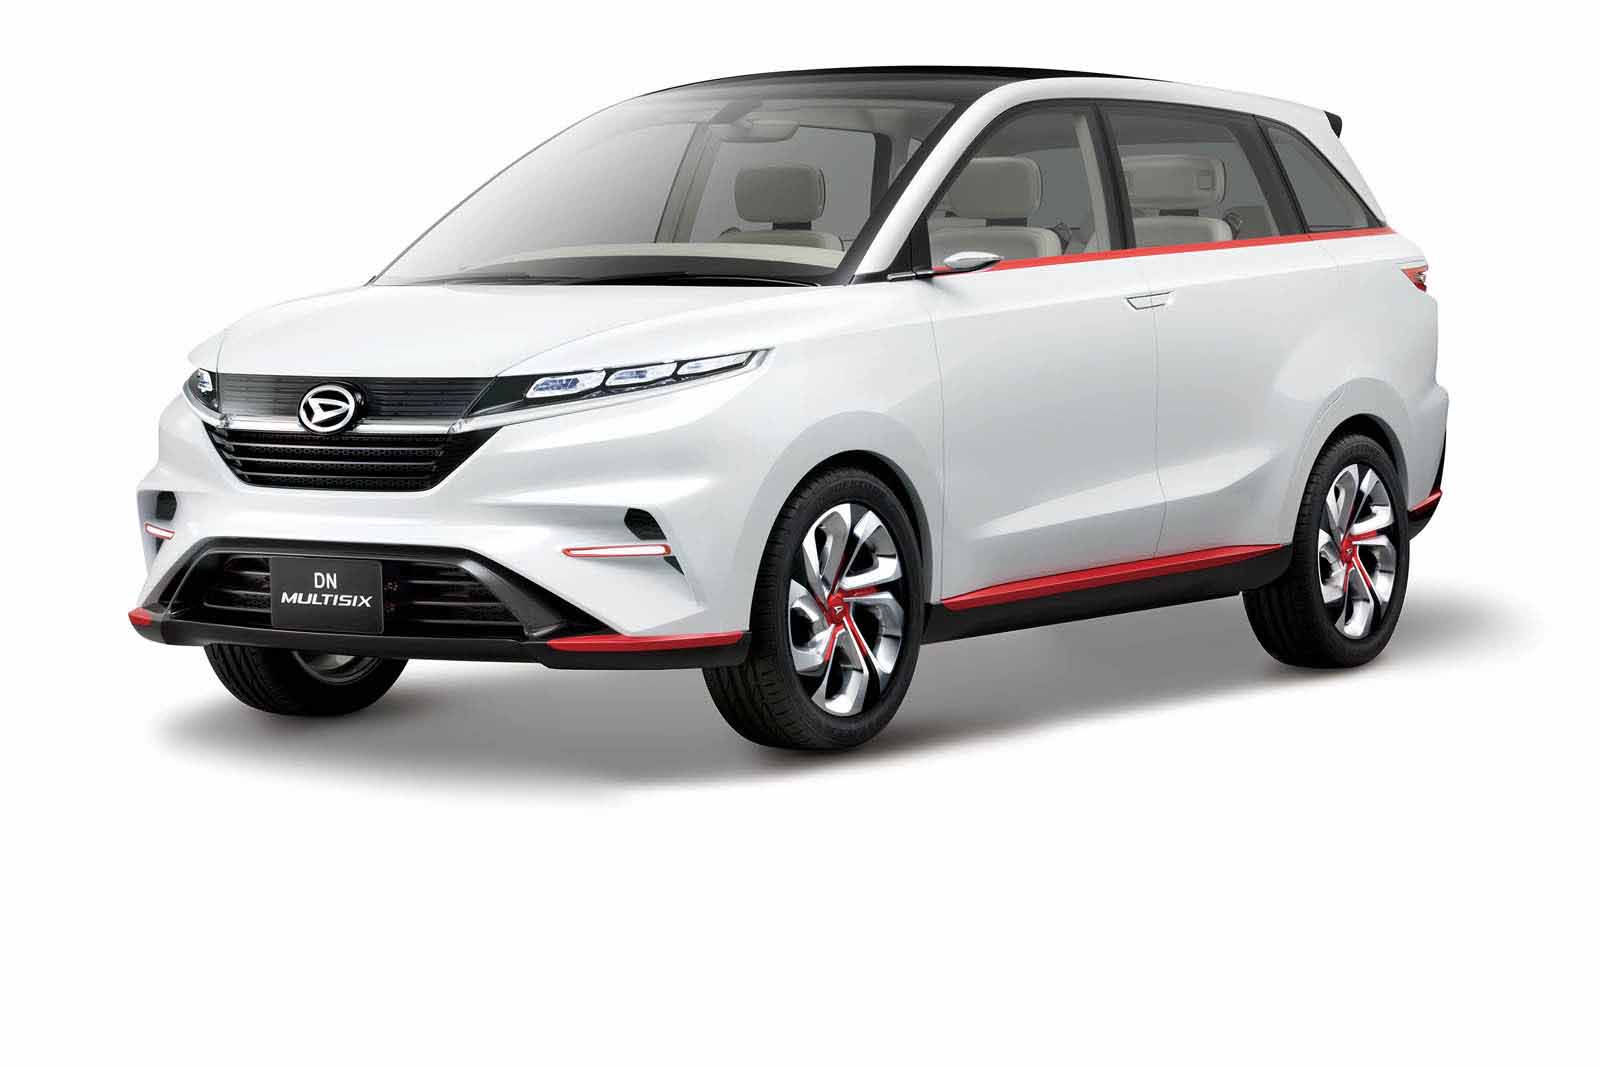 Daihatsu Siapkan Model Terbaru Dari Kei Car Dan SUV Autosid